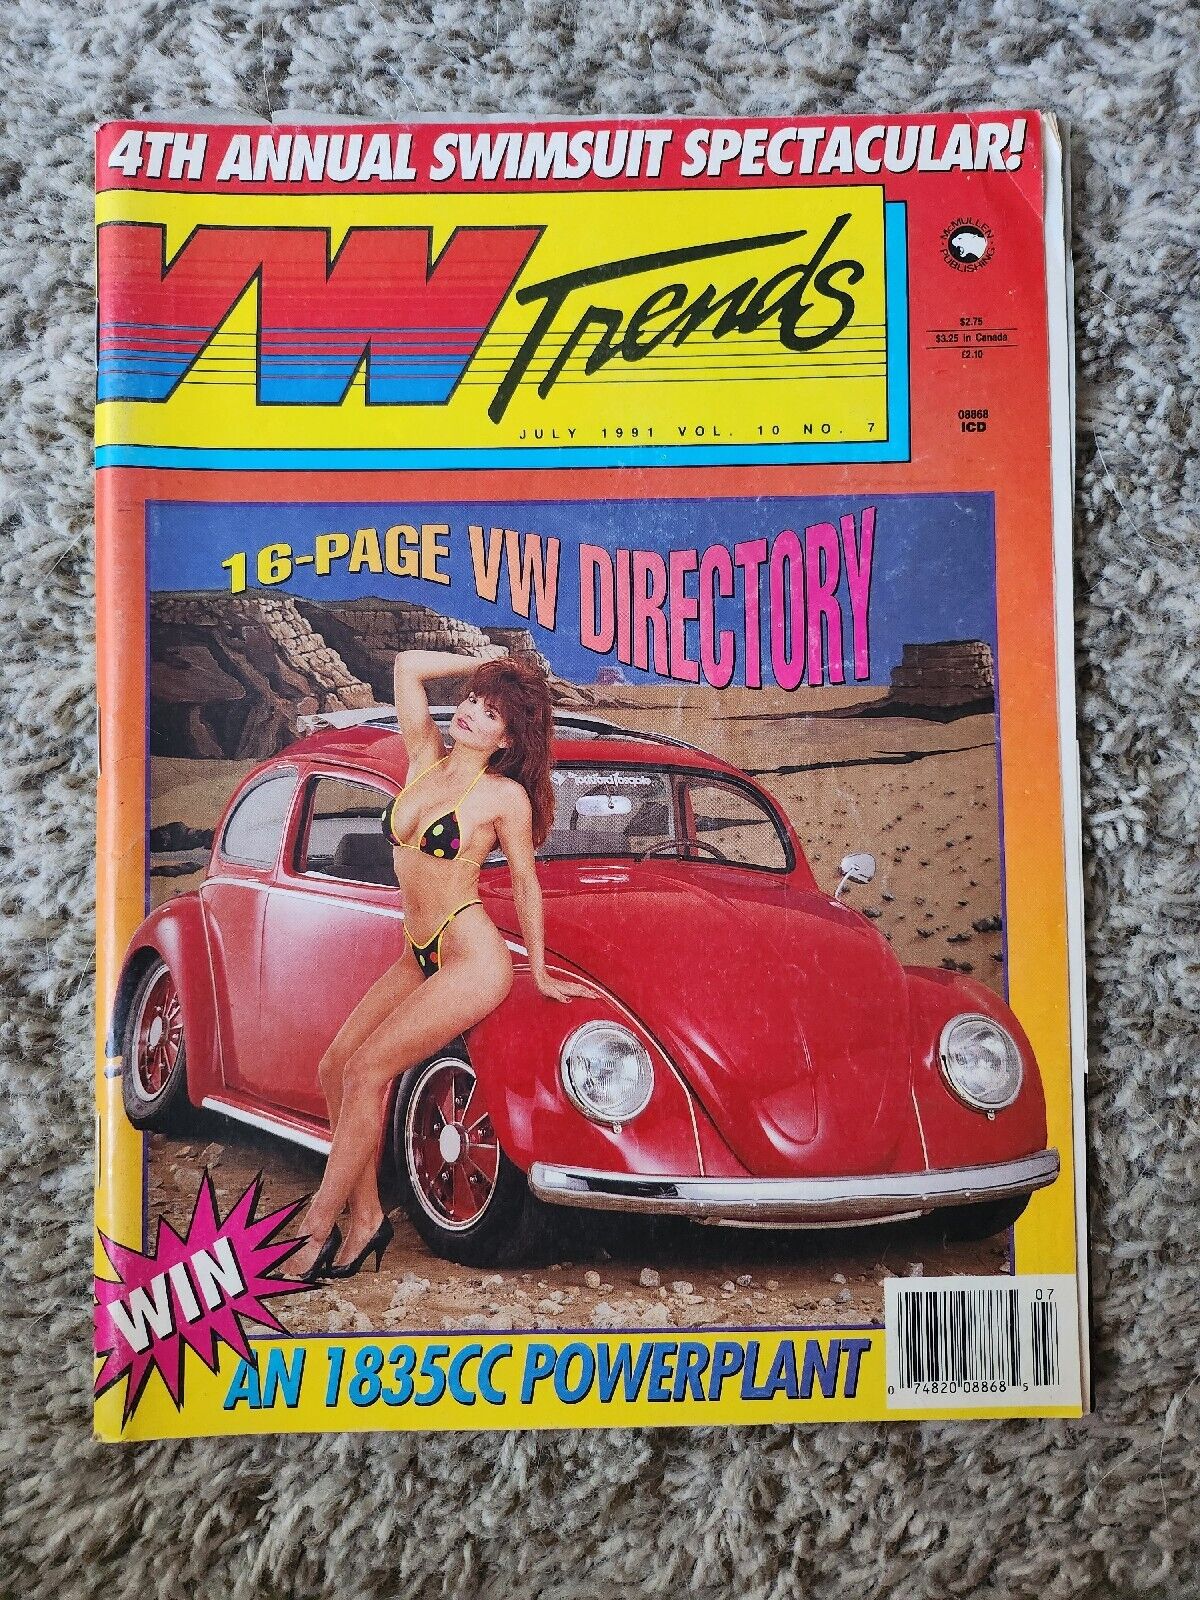 Vintage VW Trends Magazine July 1991 Volume 10 Number 7